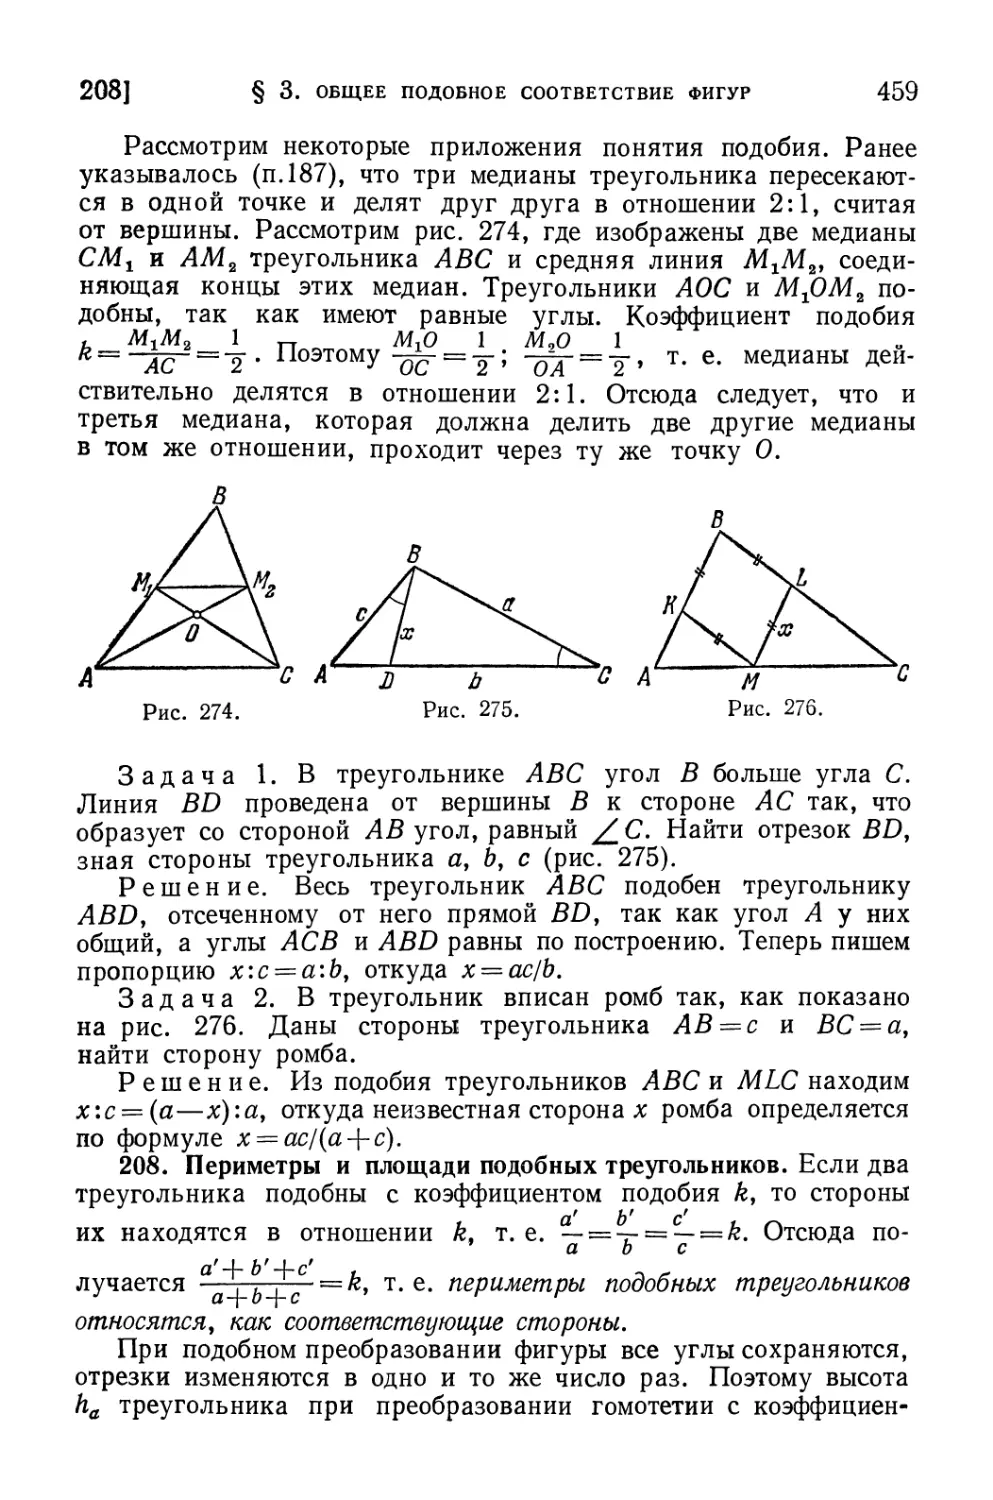 208. Периметры и площади подобных треугольников